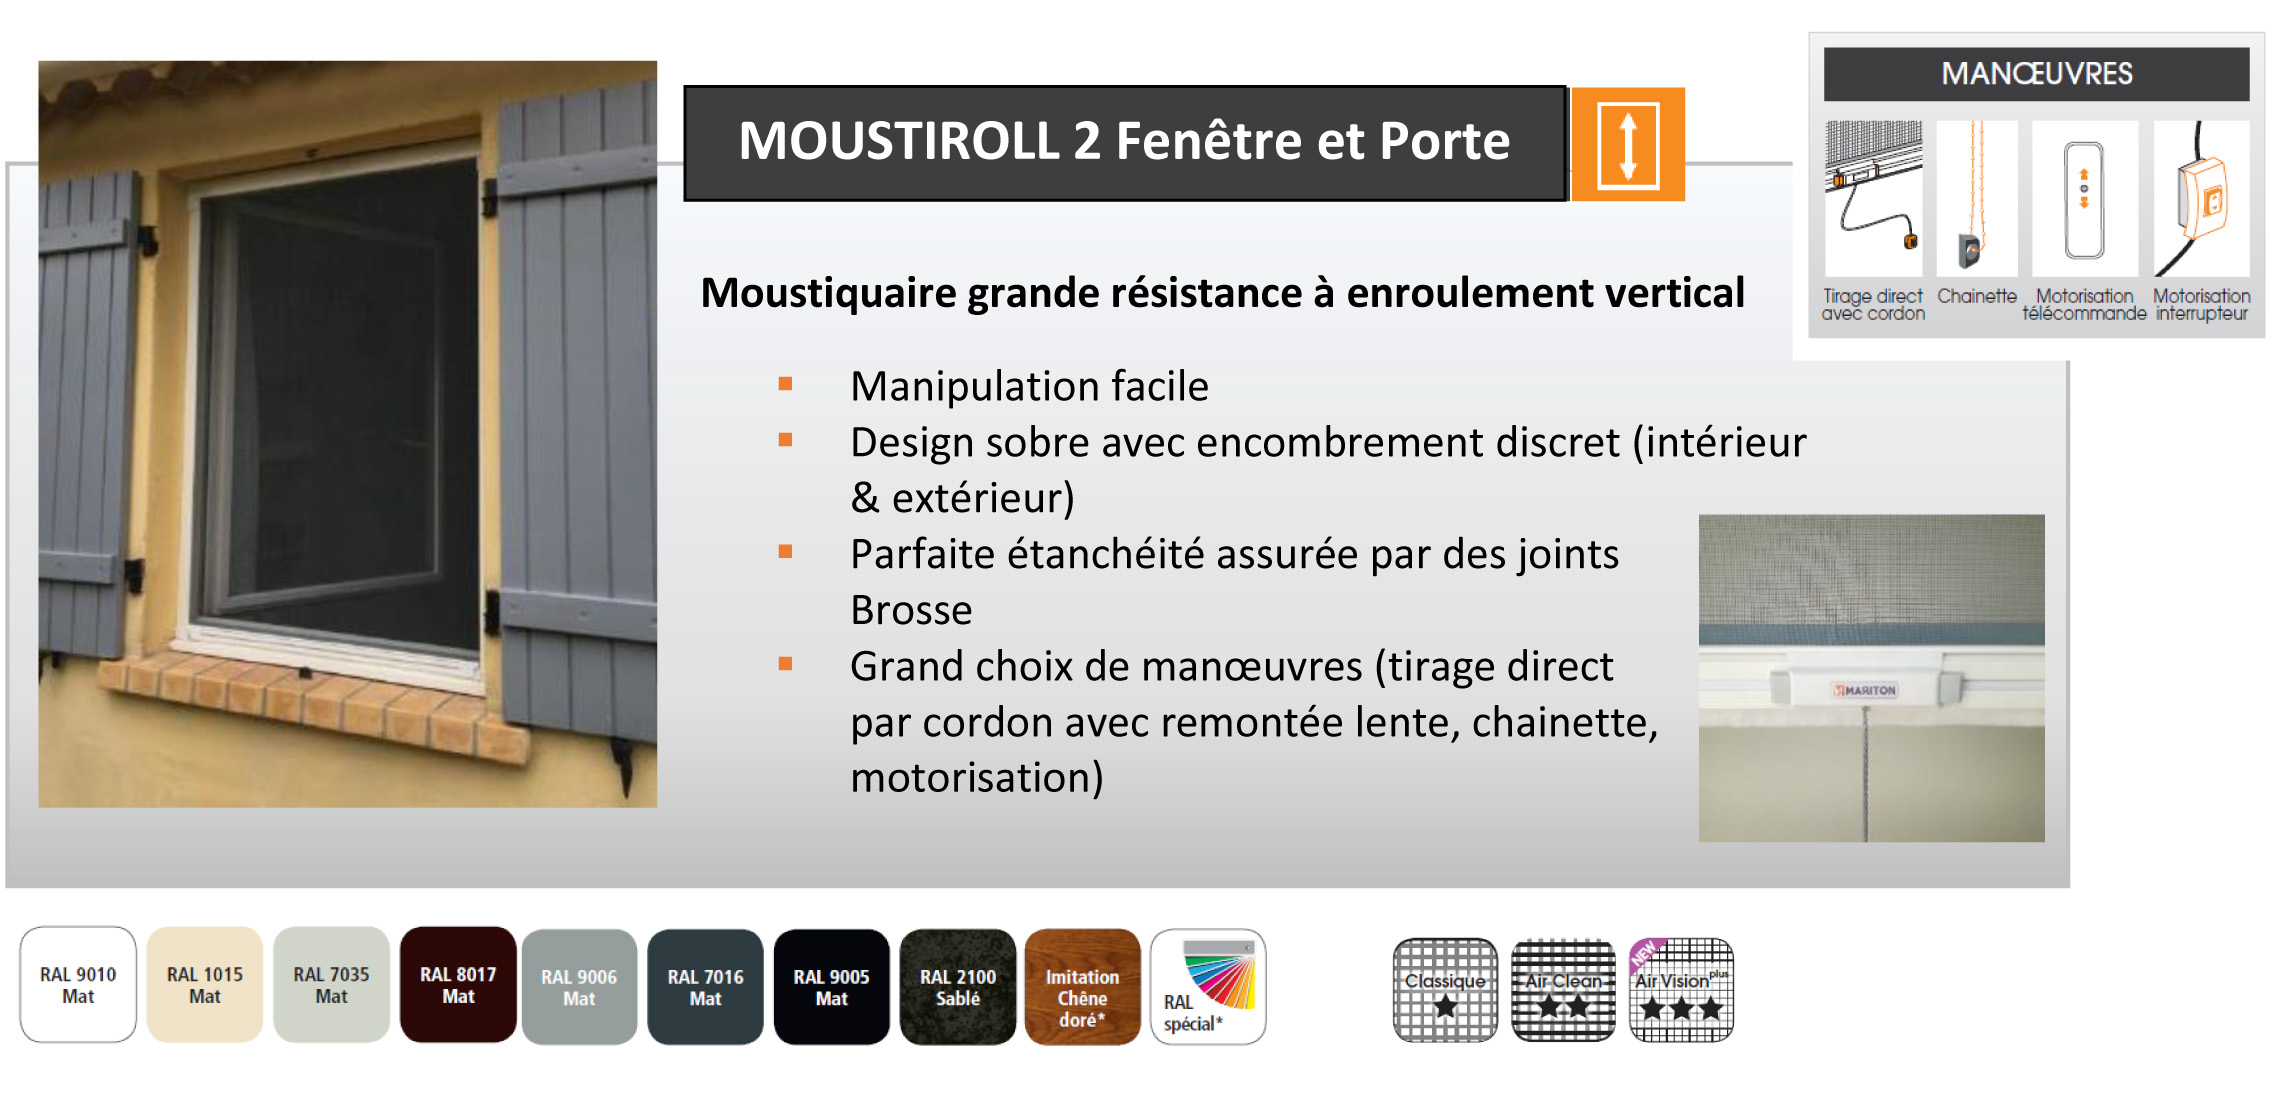 Descriptif du produit Moustiroll2 fenêtre et porte pour prise de mesure moustiquaire 